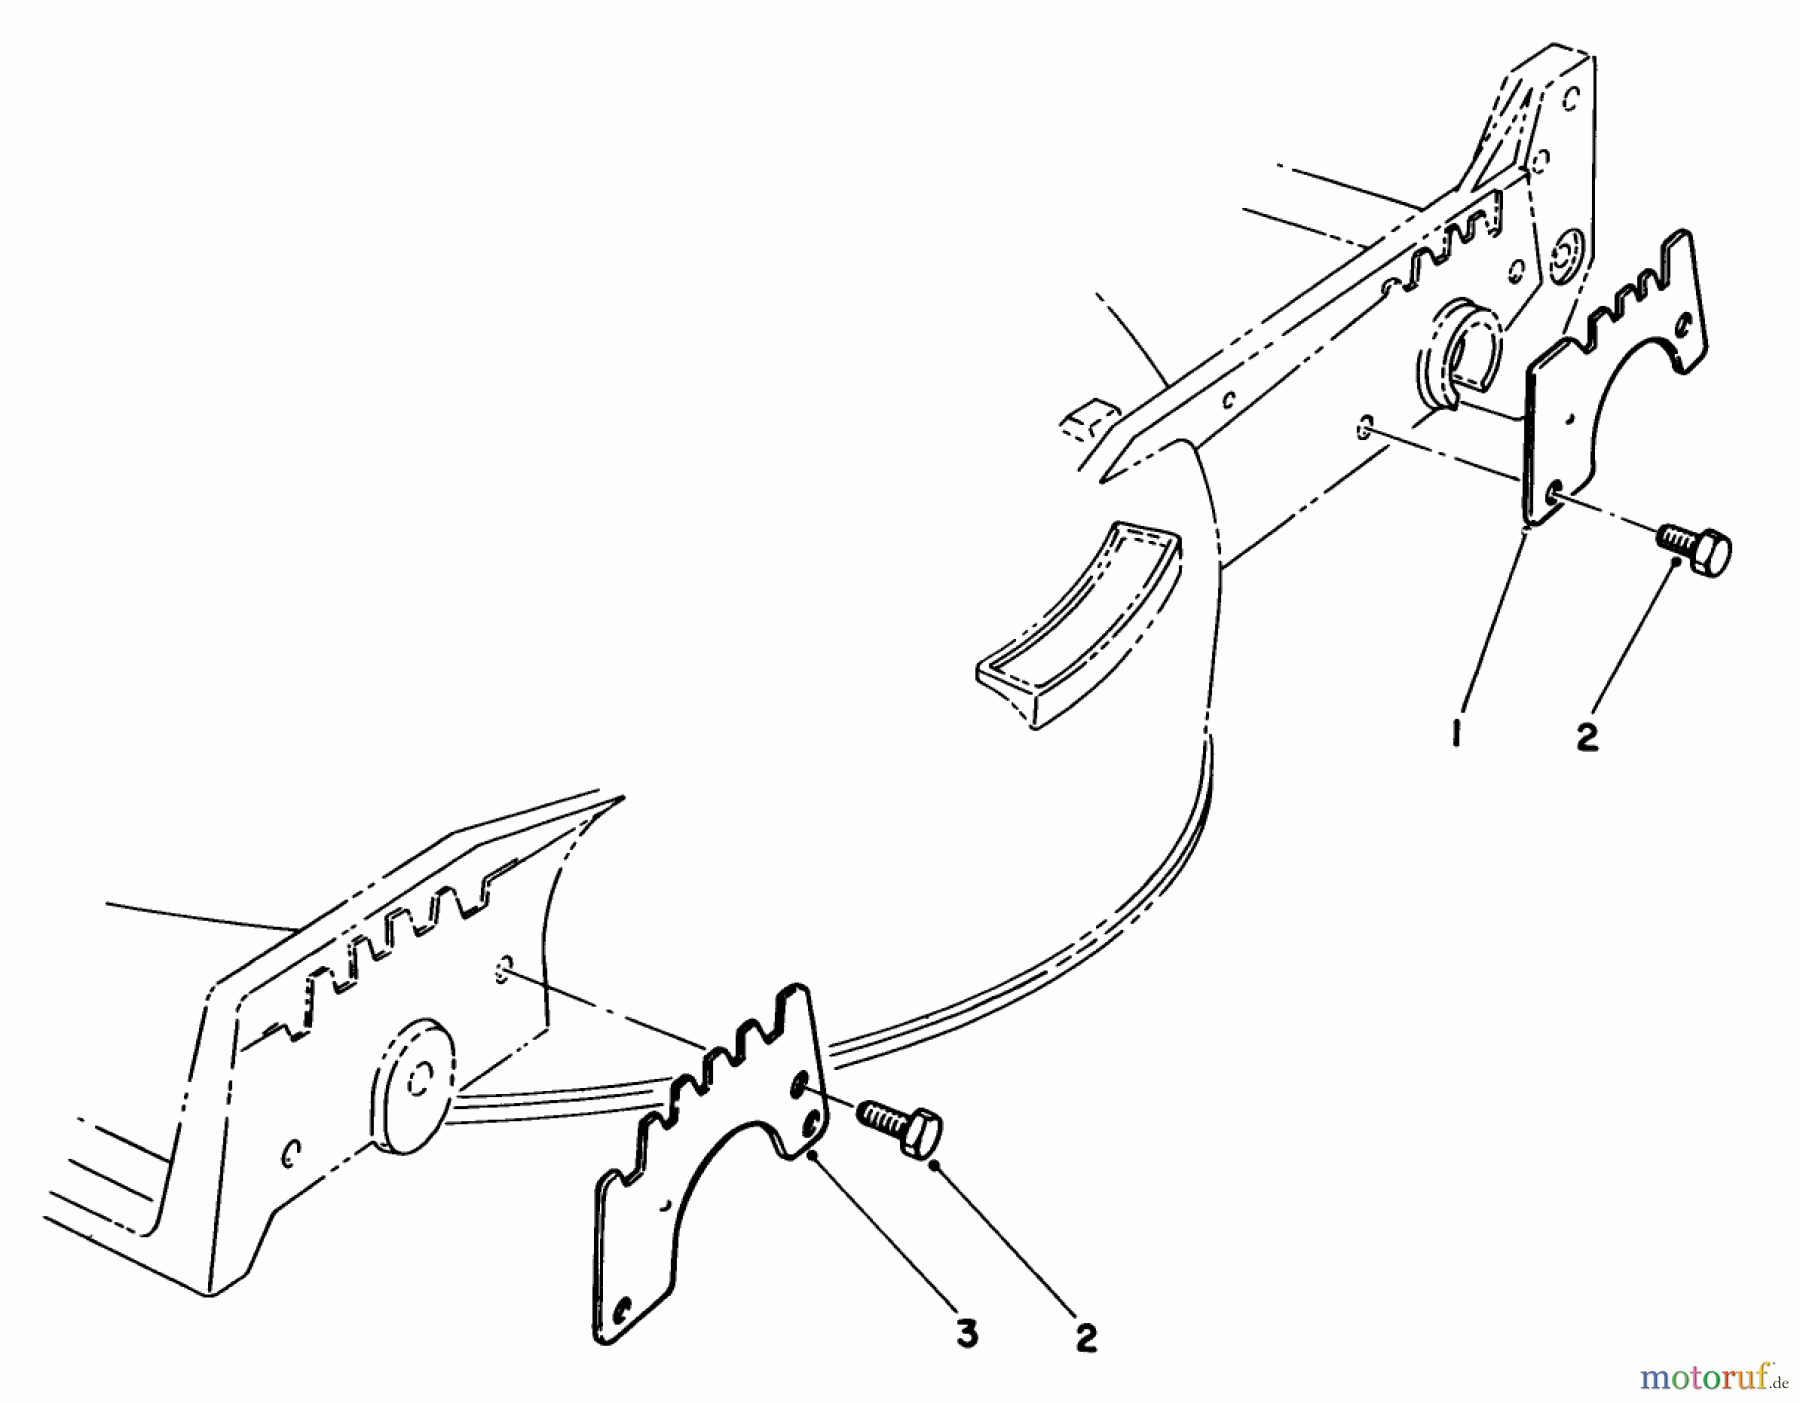  Toro Neu Mowers, Walk-Behind Seite 1 20680 - Toro Lawnmower, 1984 (4000001-4999999) WEAR PLATE KIT NO. 49-4080 (OPTIONAL)